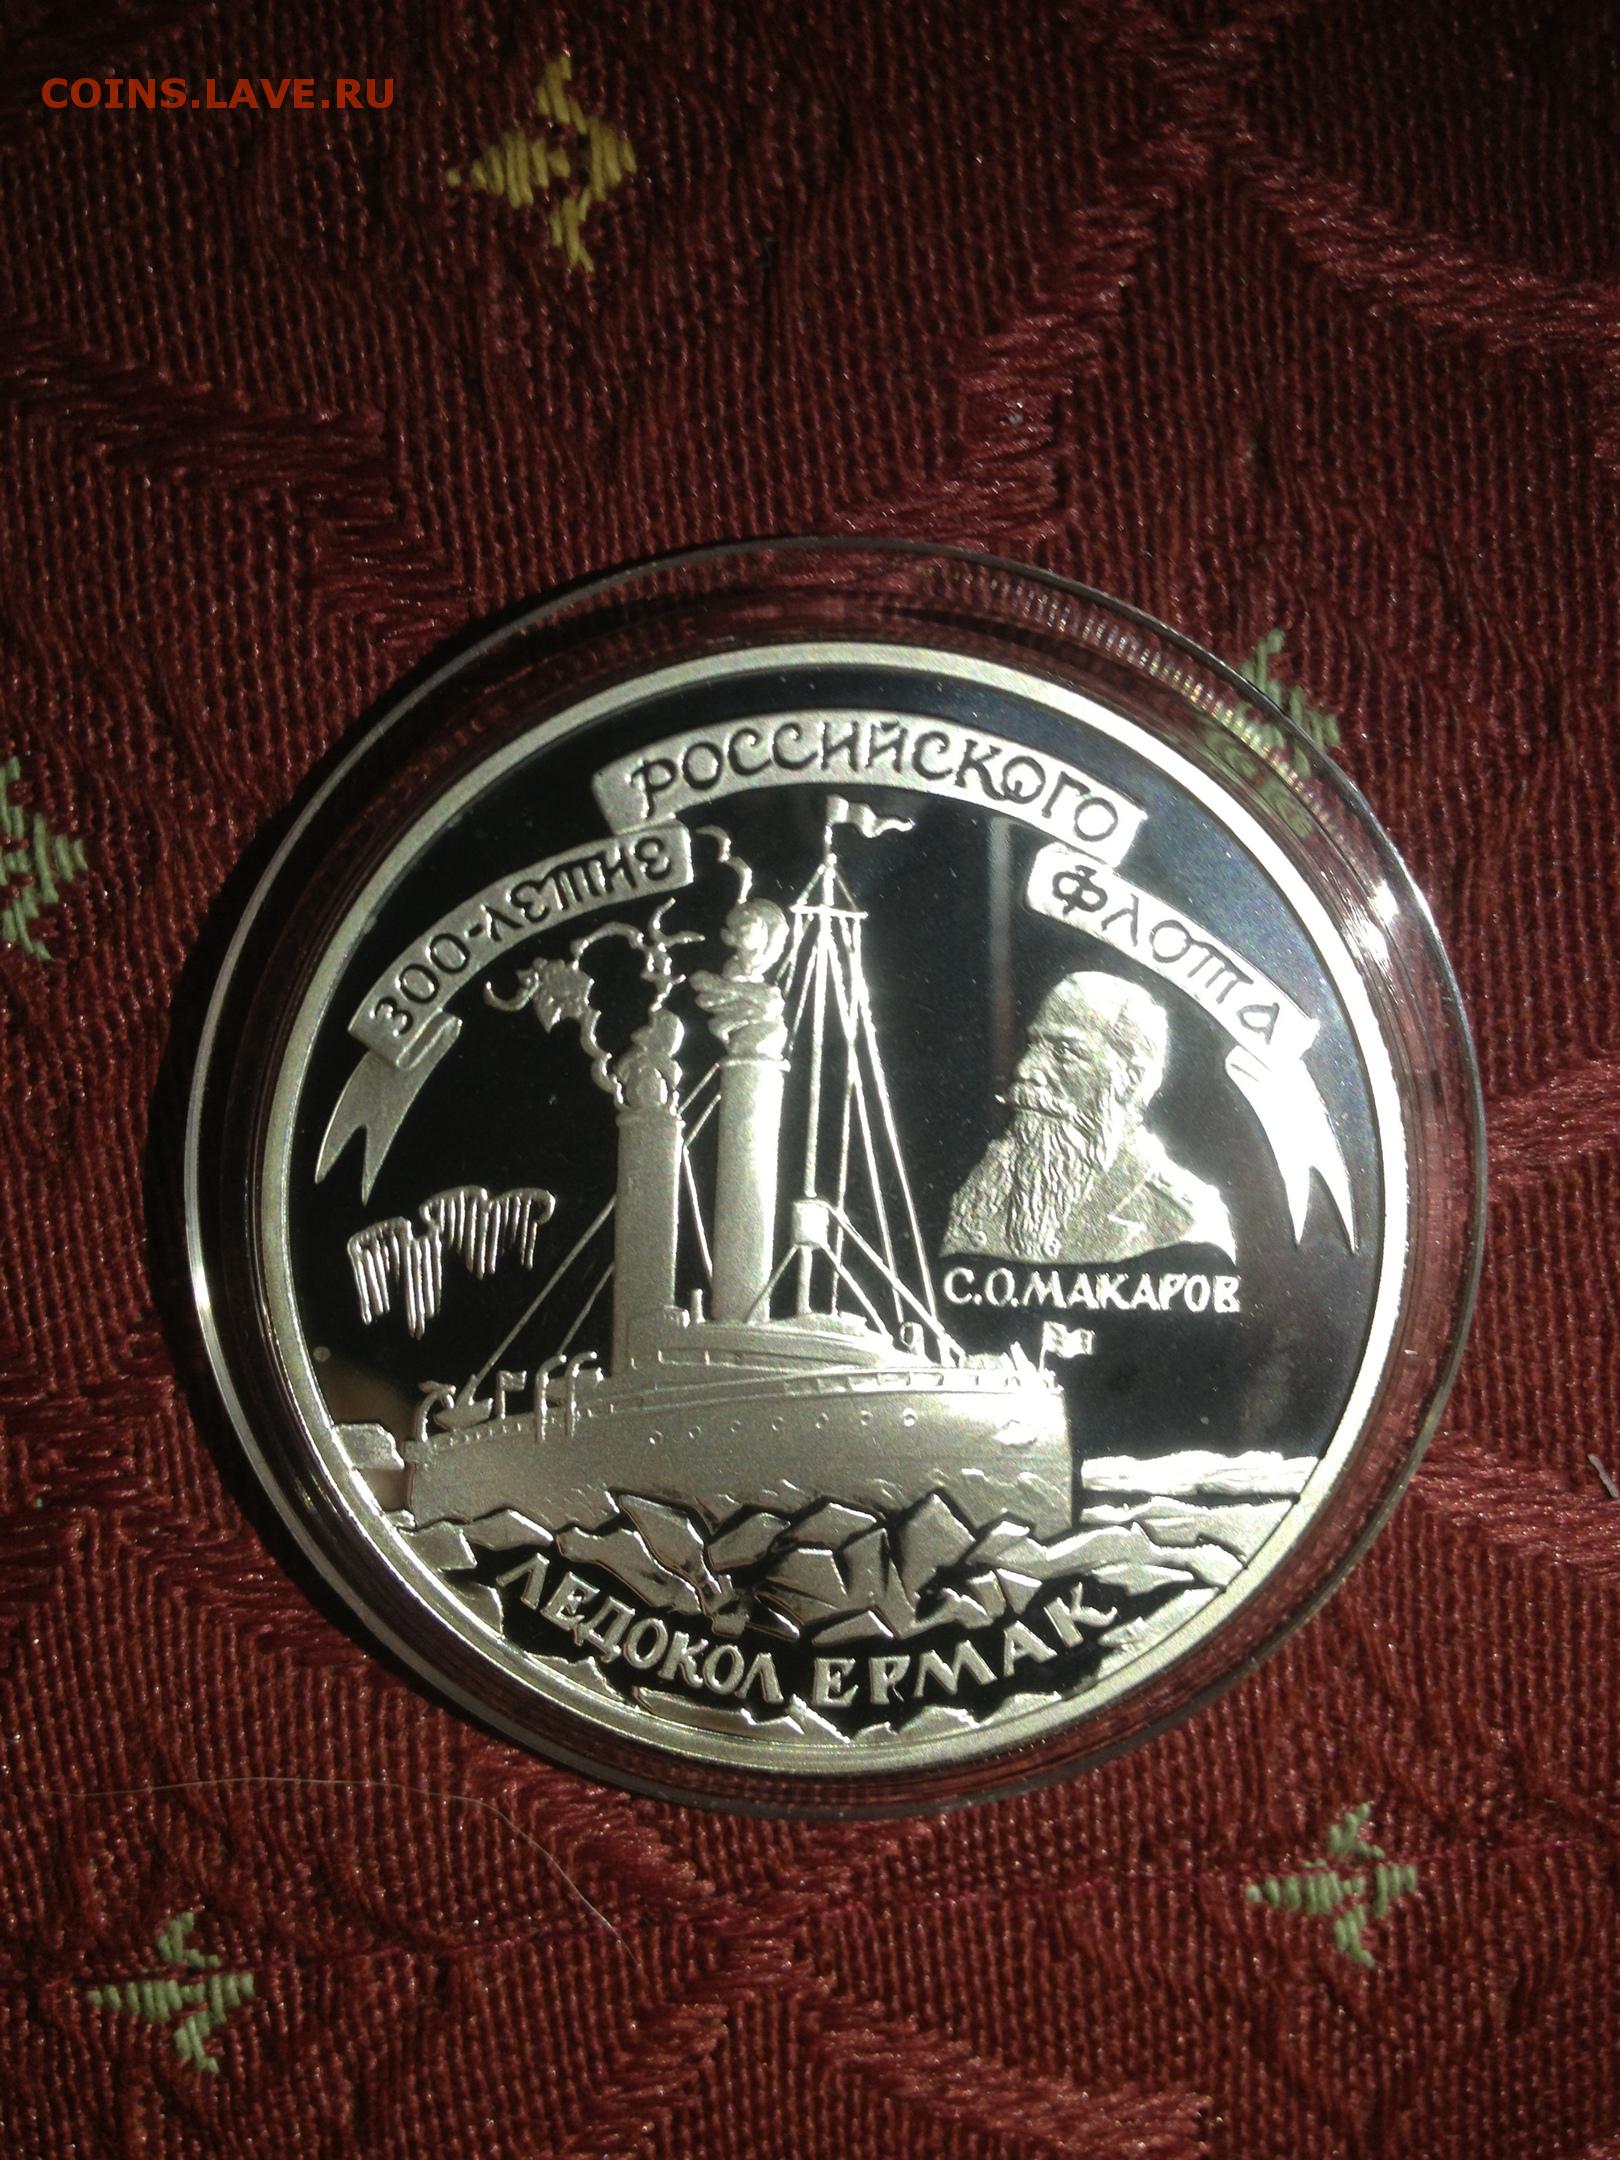 3 рубля ледокольный. Медаль 300 летие российского военно-морского флота. Ледокол Ленин Золотая монета.